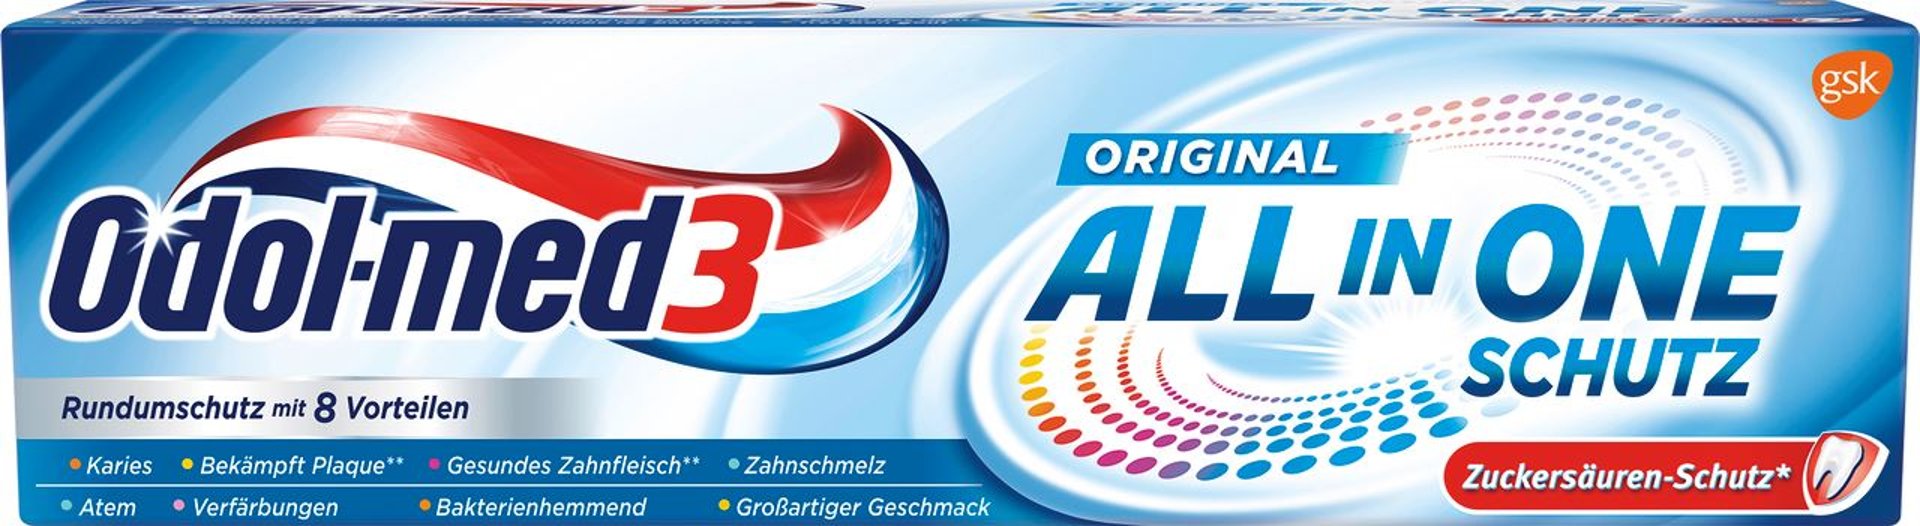 Odol-med3 Zahnpasta All in One Schutz Original - 75 ml Faltschachtel